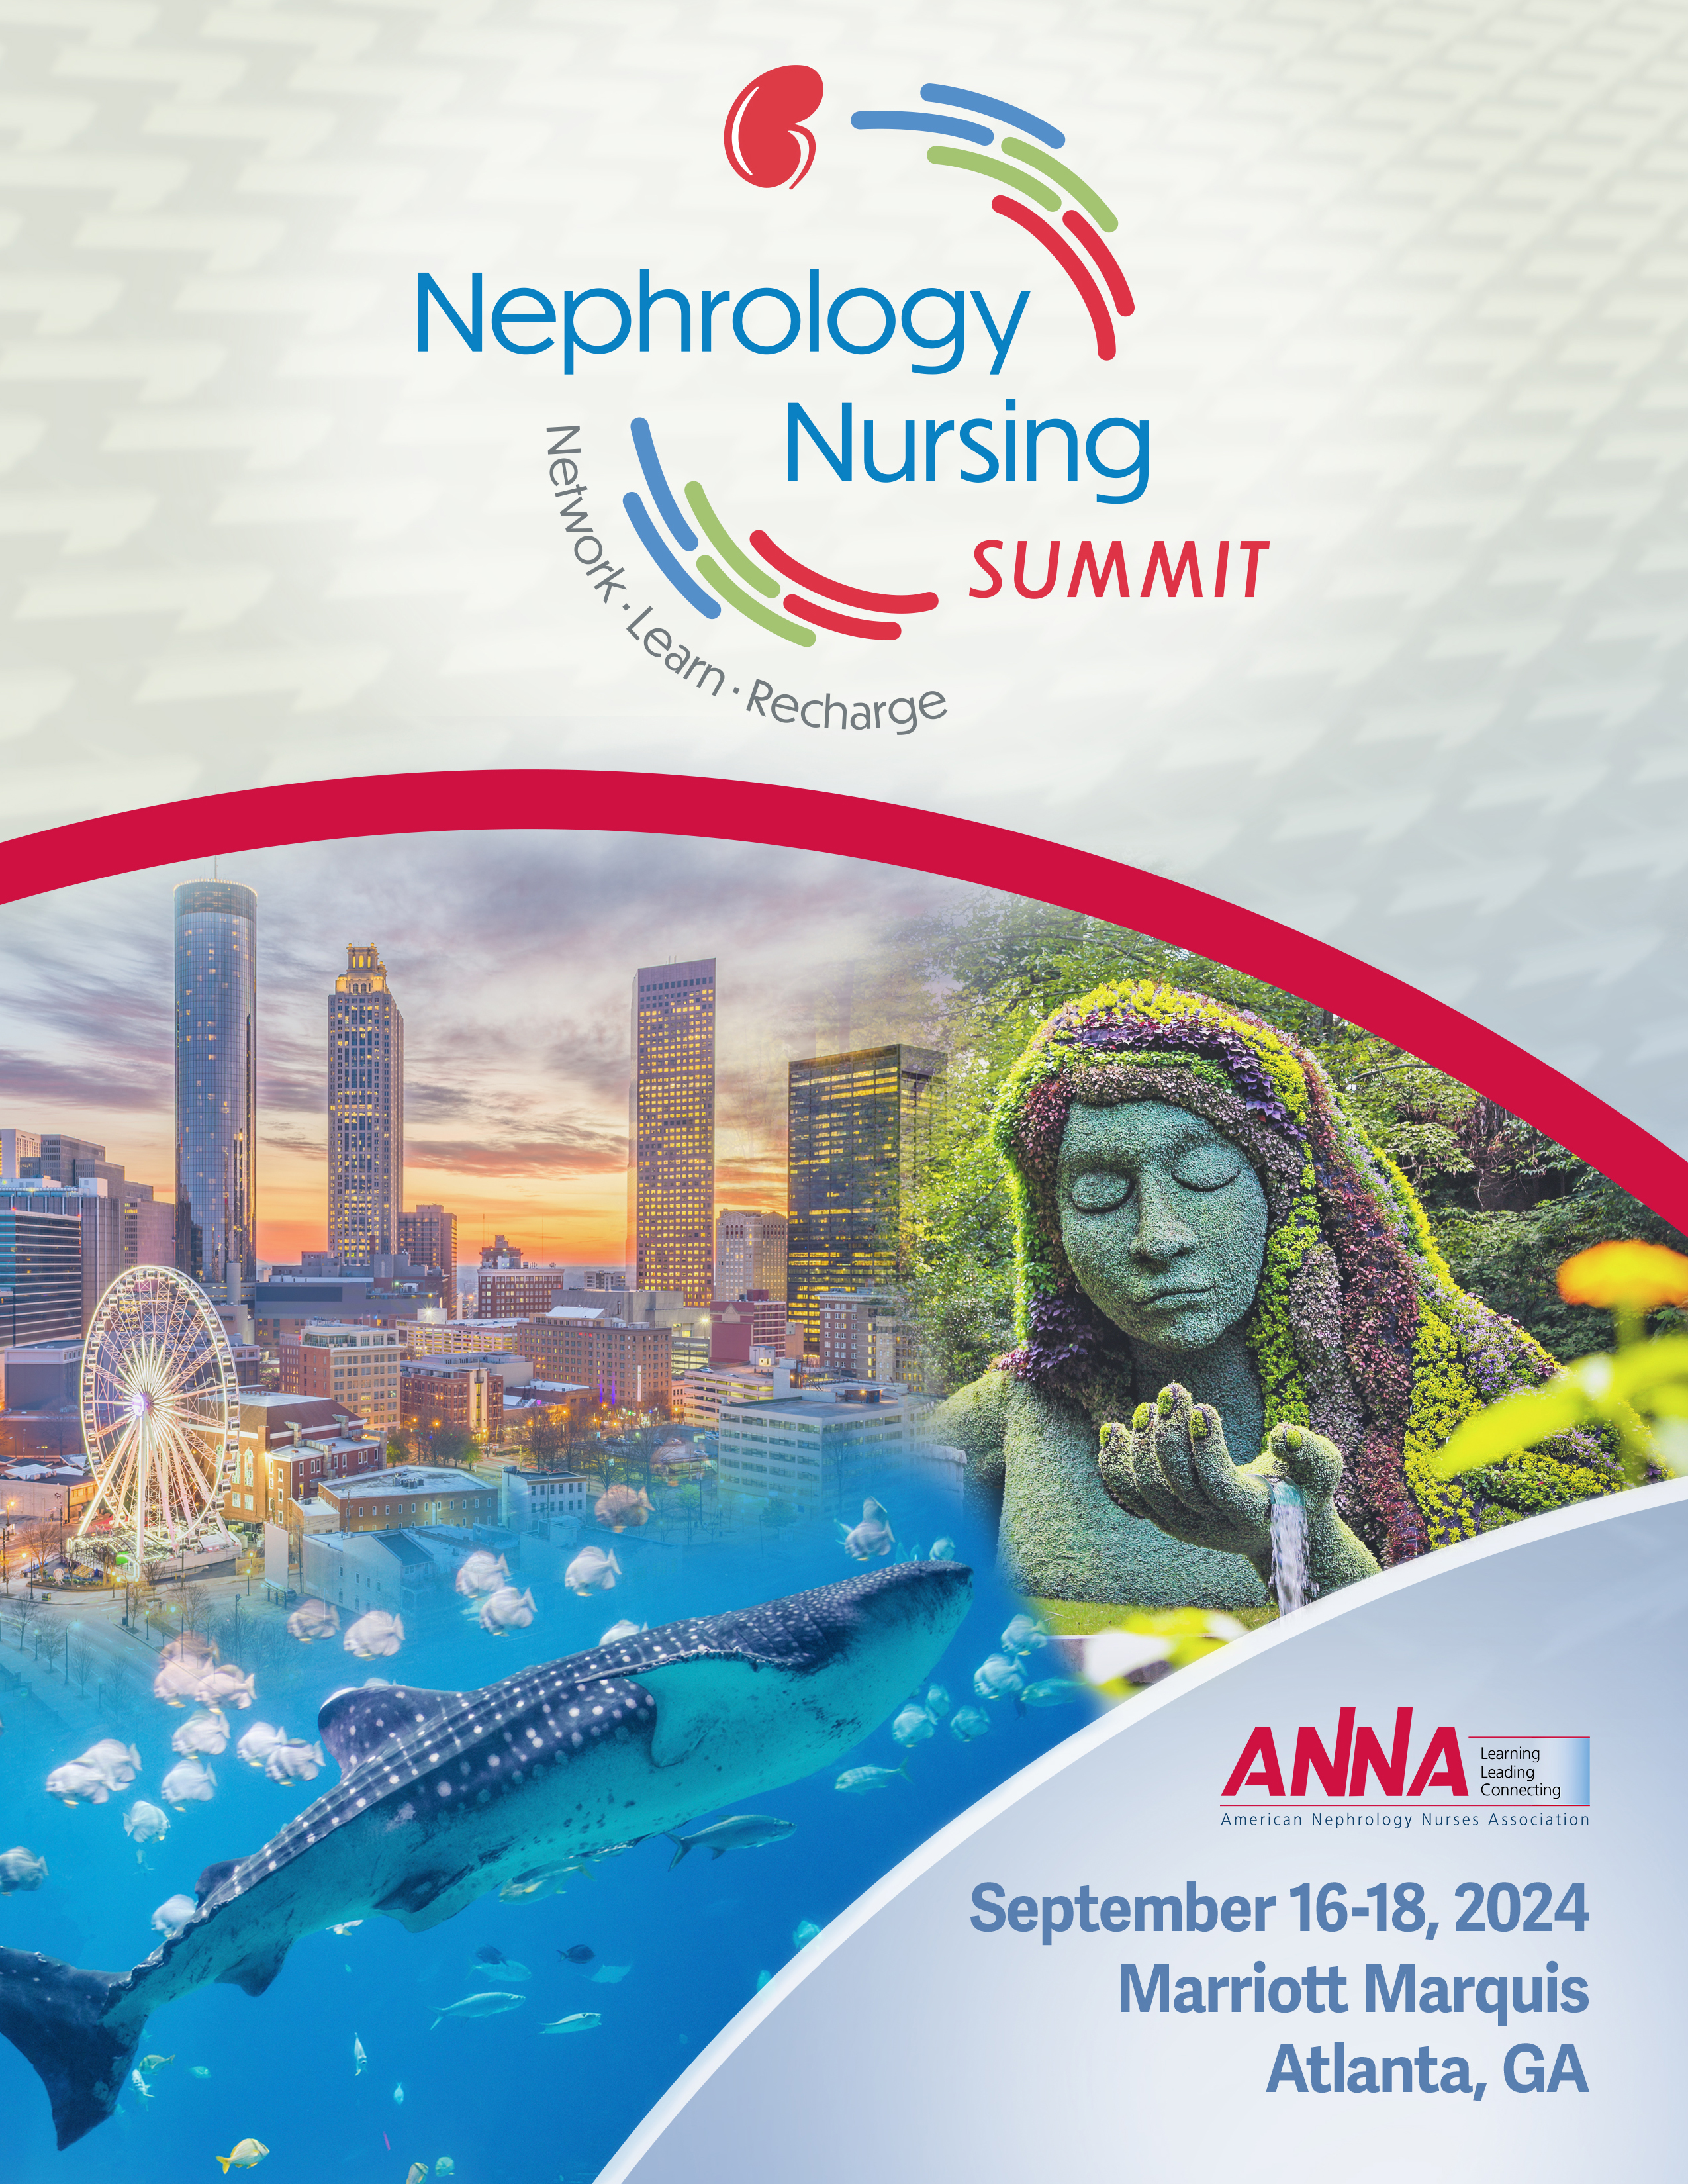 Nephrology Nursing Summit Poster: September 16-18, 2024, Marriott Marquis, Atlanta, GA